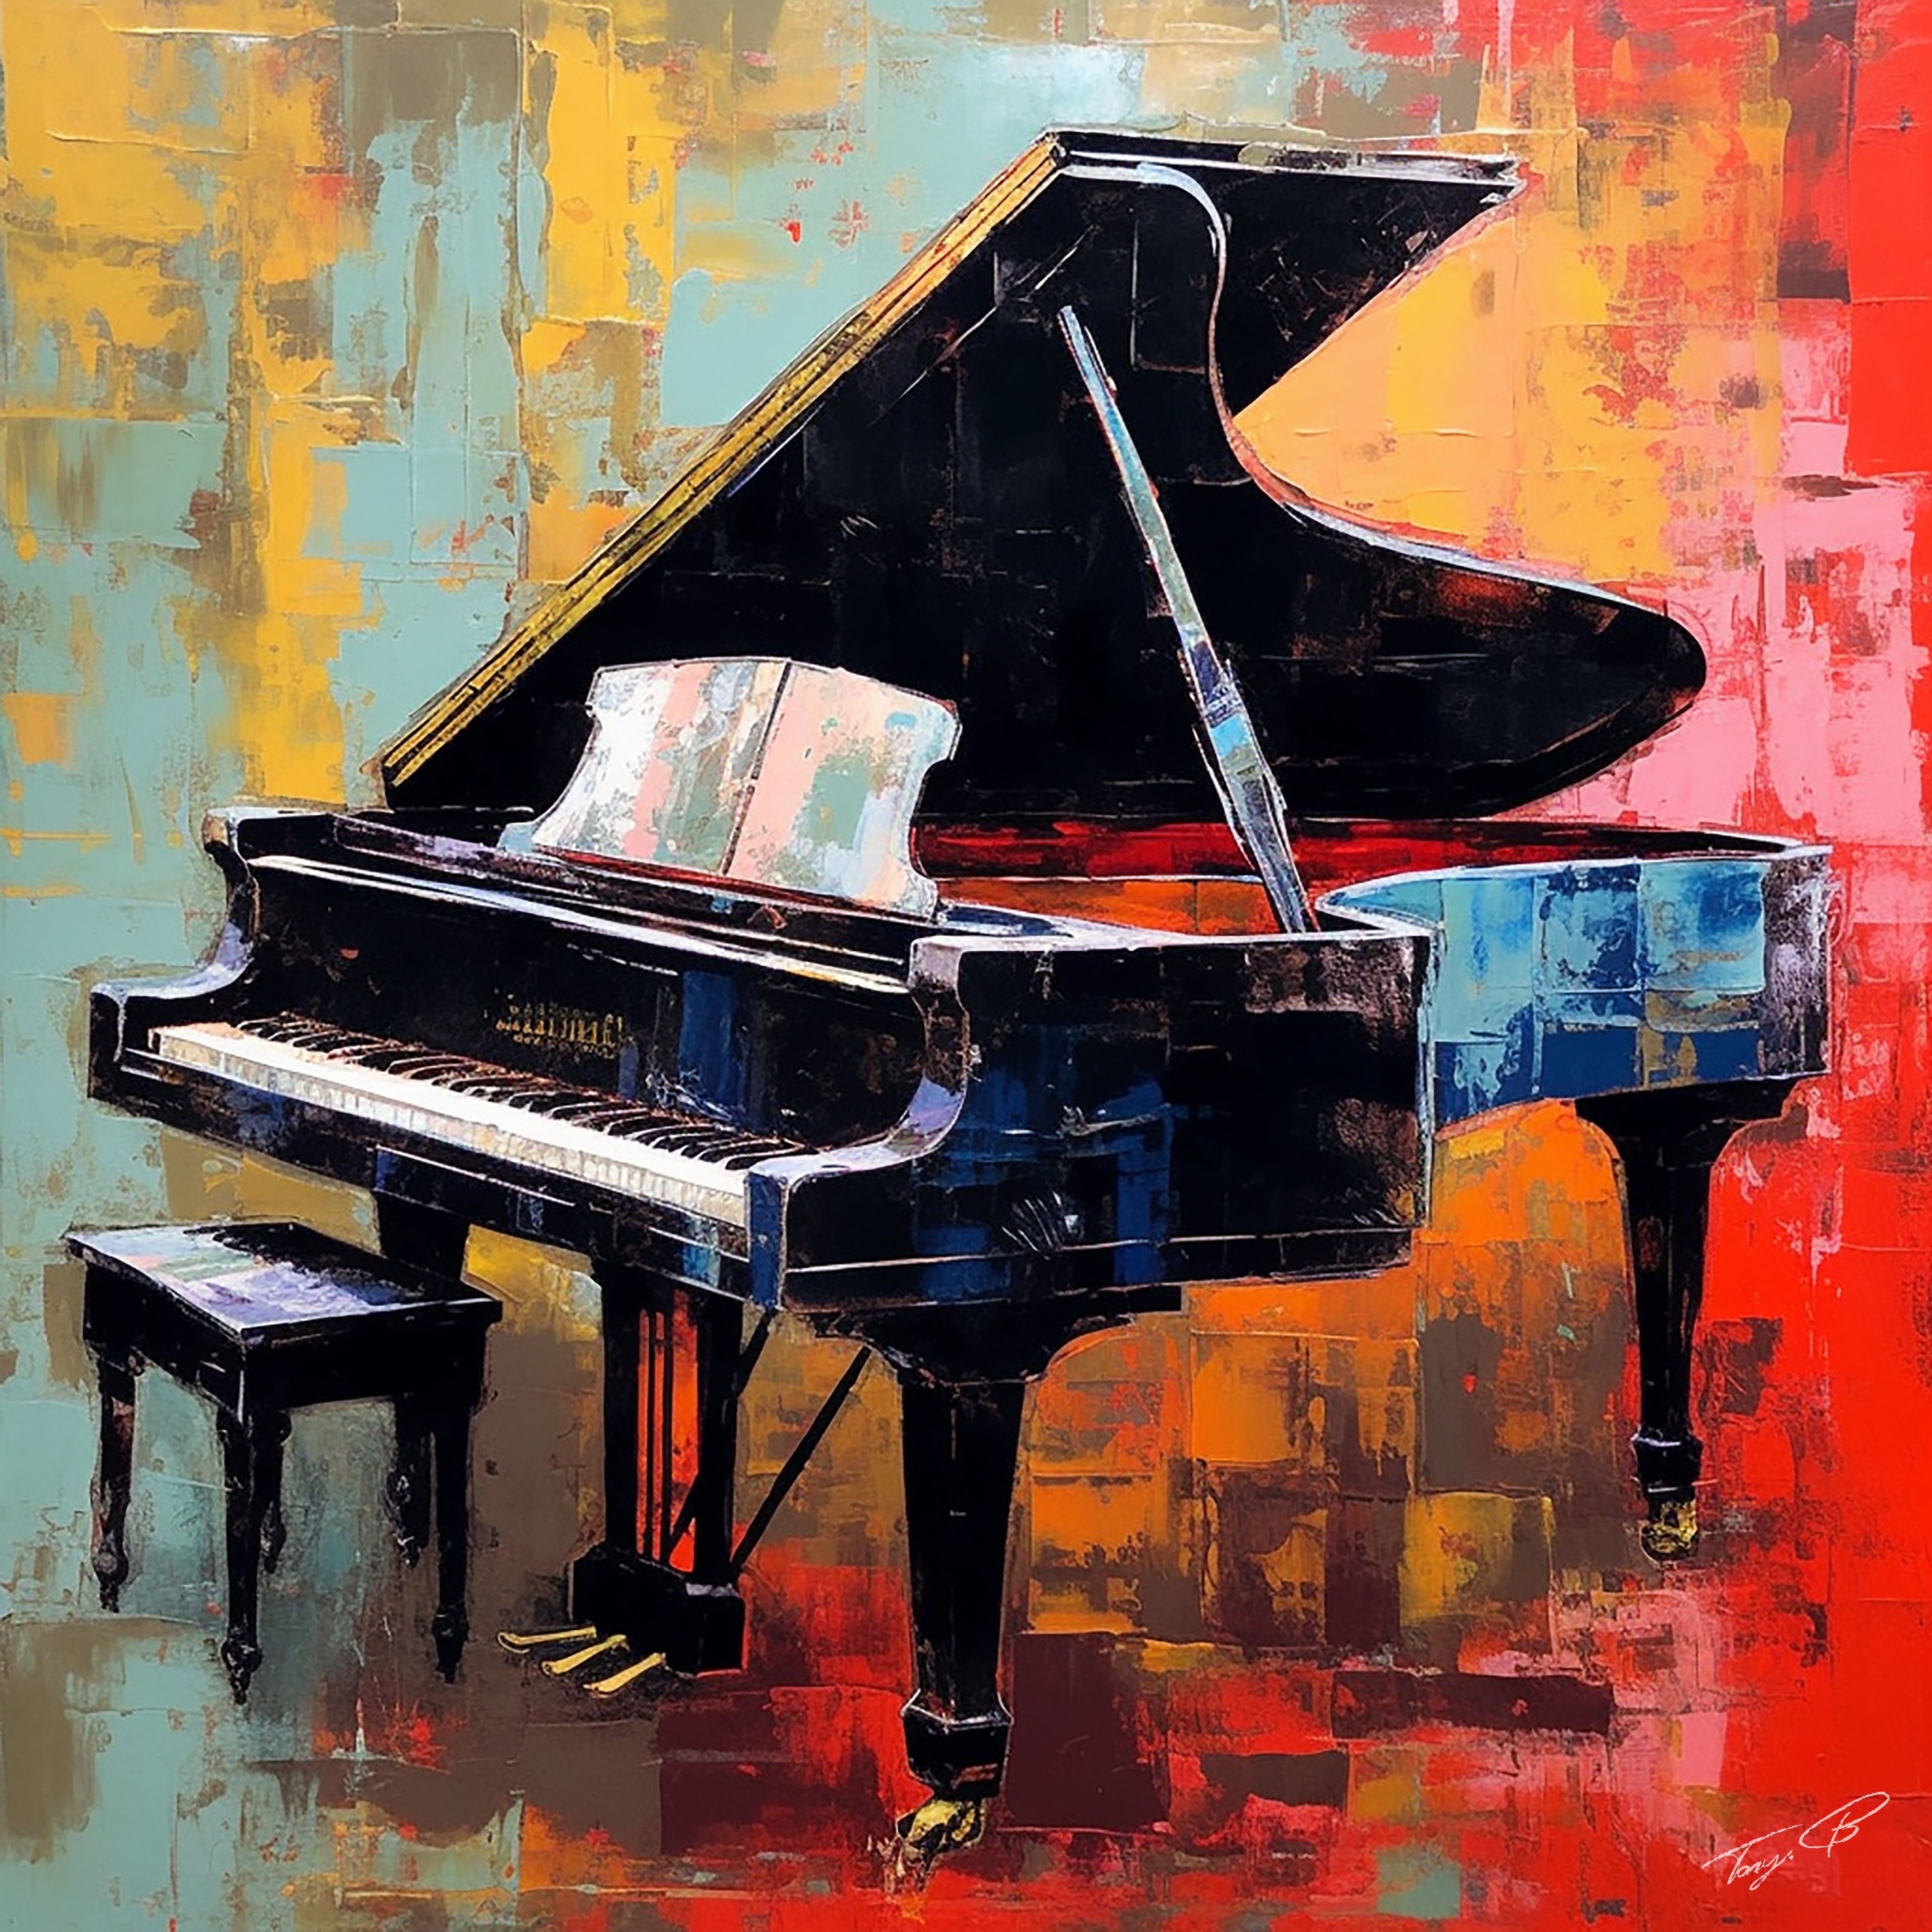 Piano: Harmony in Keys by Tony Illustrations